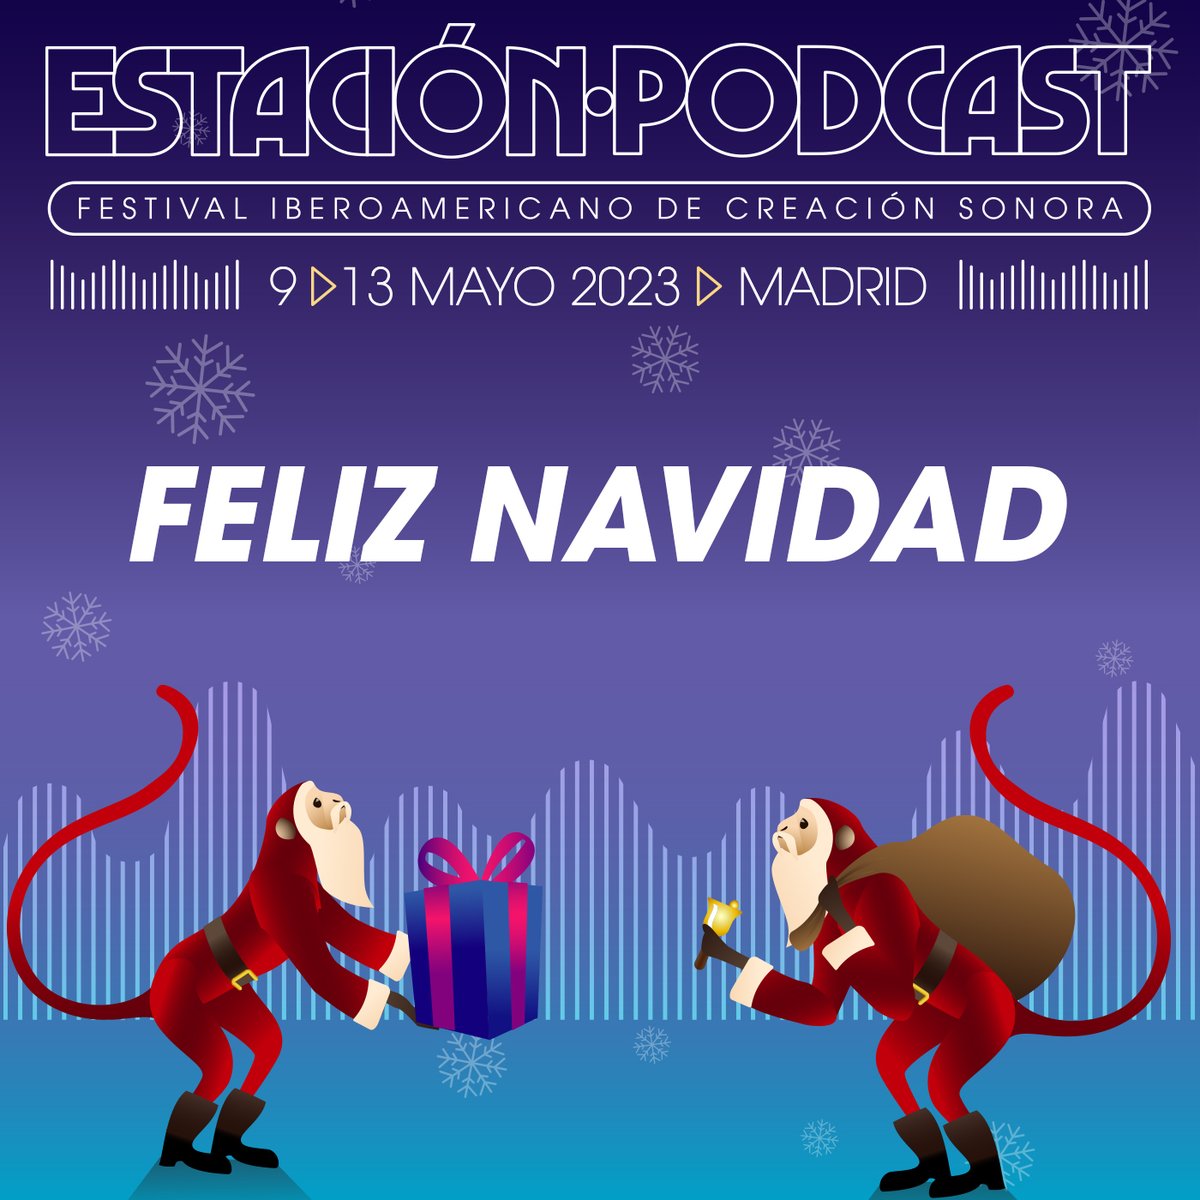 Desde Estación Podcast queremos desearos a todxs ¡Feliz Navidad! Este año se avecinan muuuuchas sorpresas que os iremos desvelando. #Madrid #EstacionPodcast #CreacionSonora #Podcast #Podcaster #Podcasting #navidad